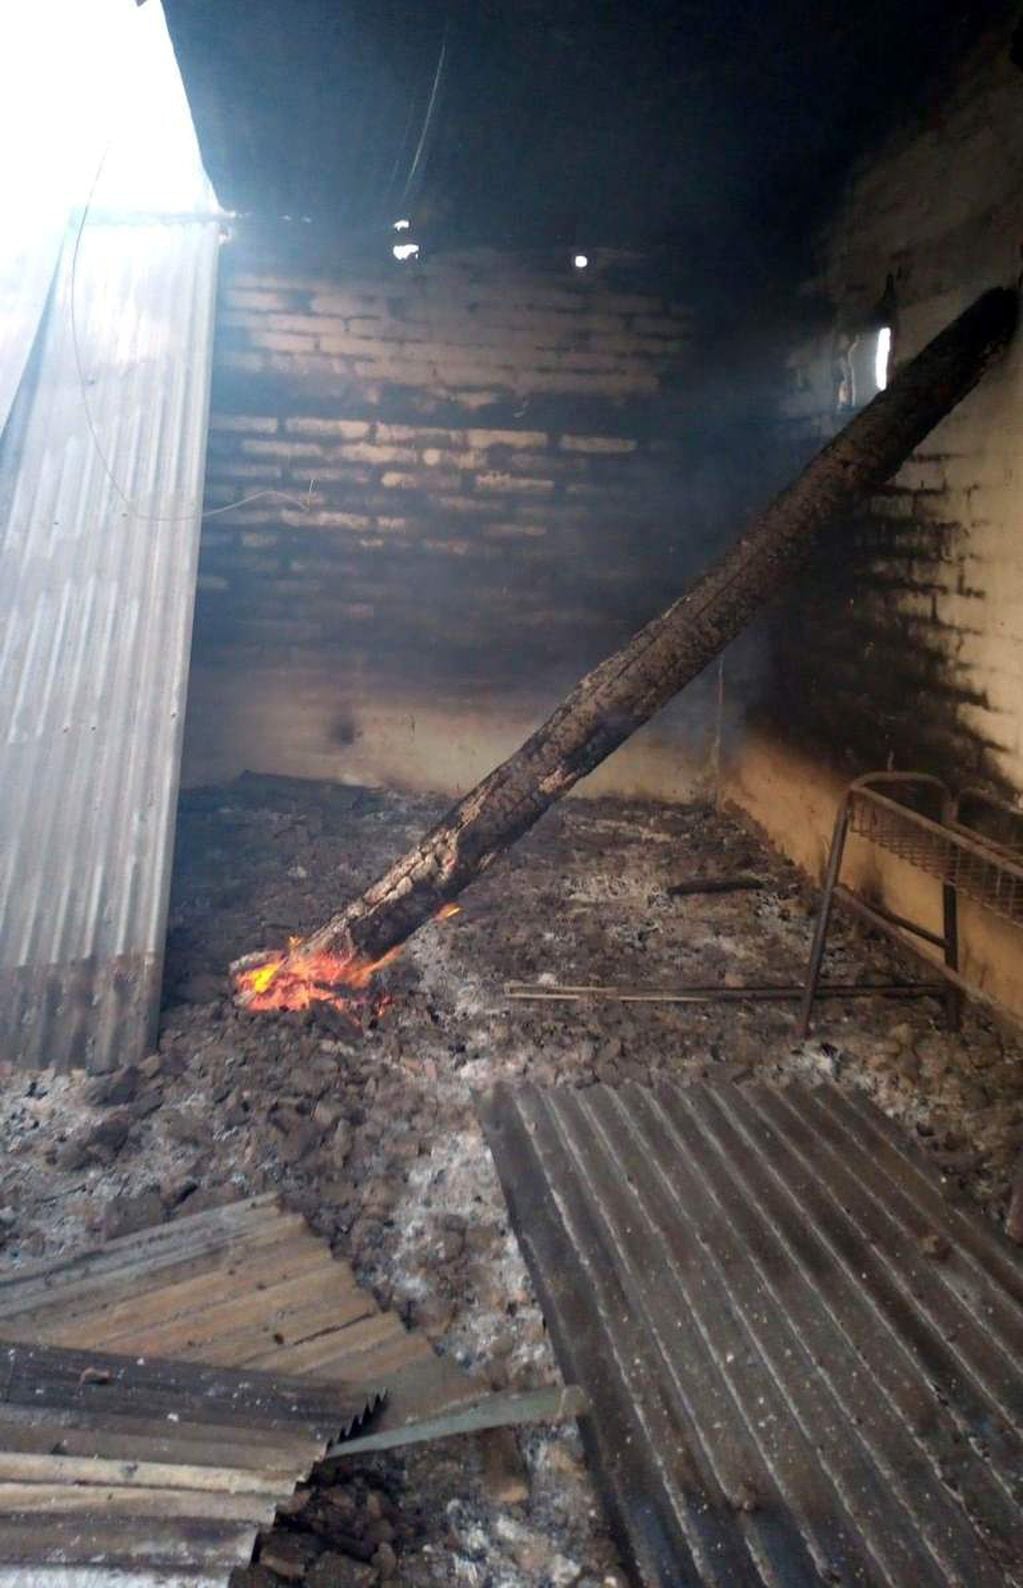 Robaron y quemaron el salón en el Club Social y Deportivo Santa Rosa en San Rafael.